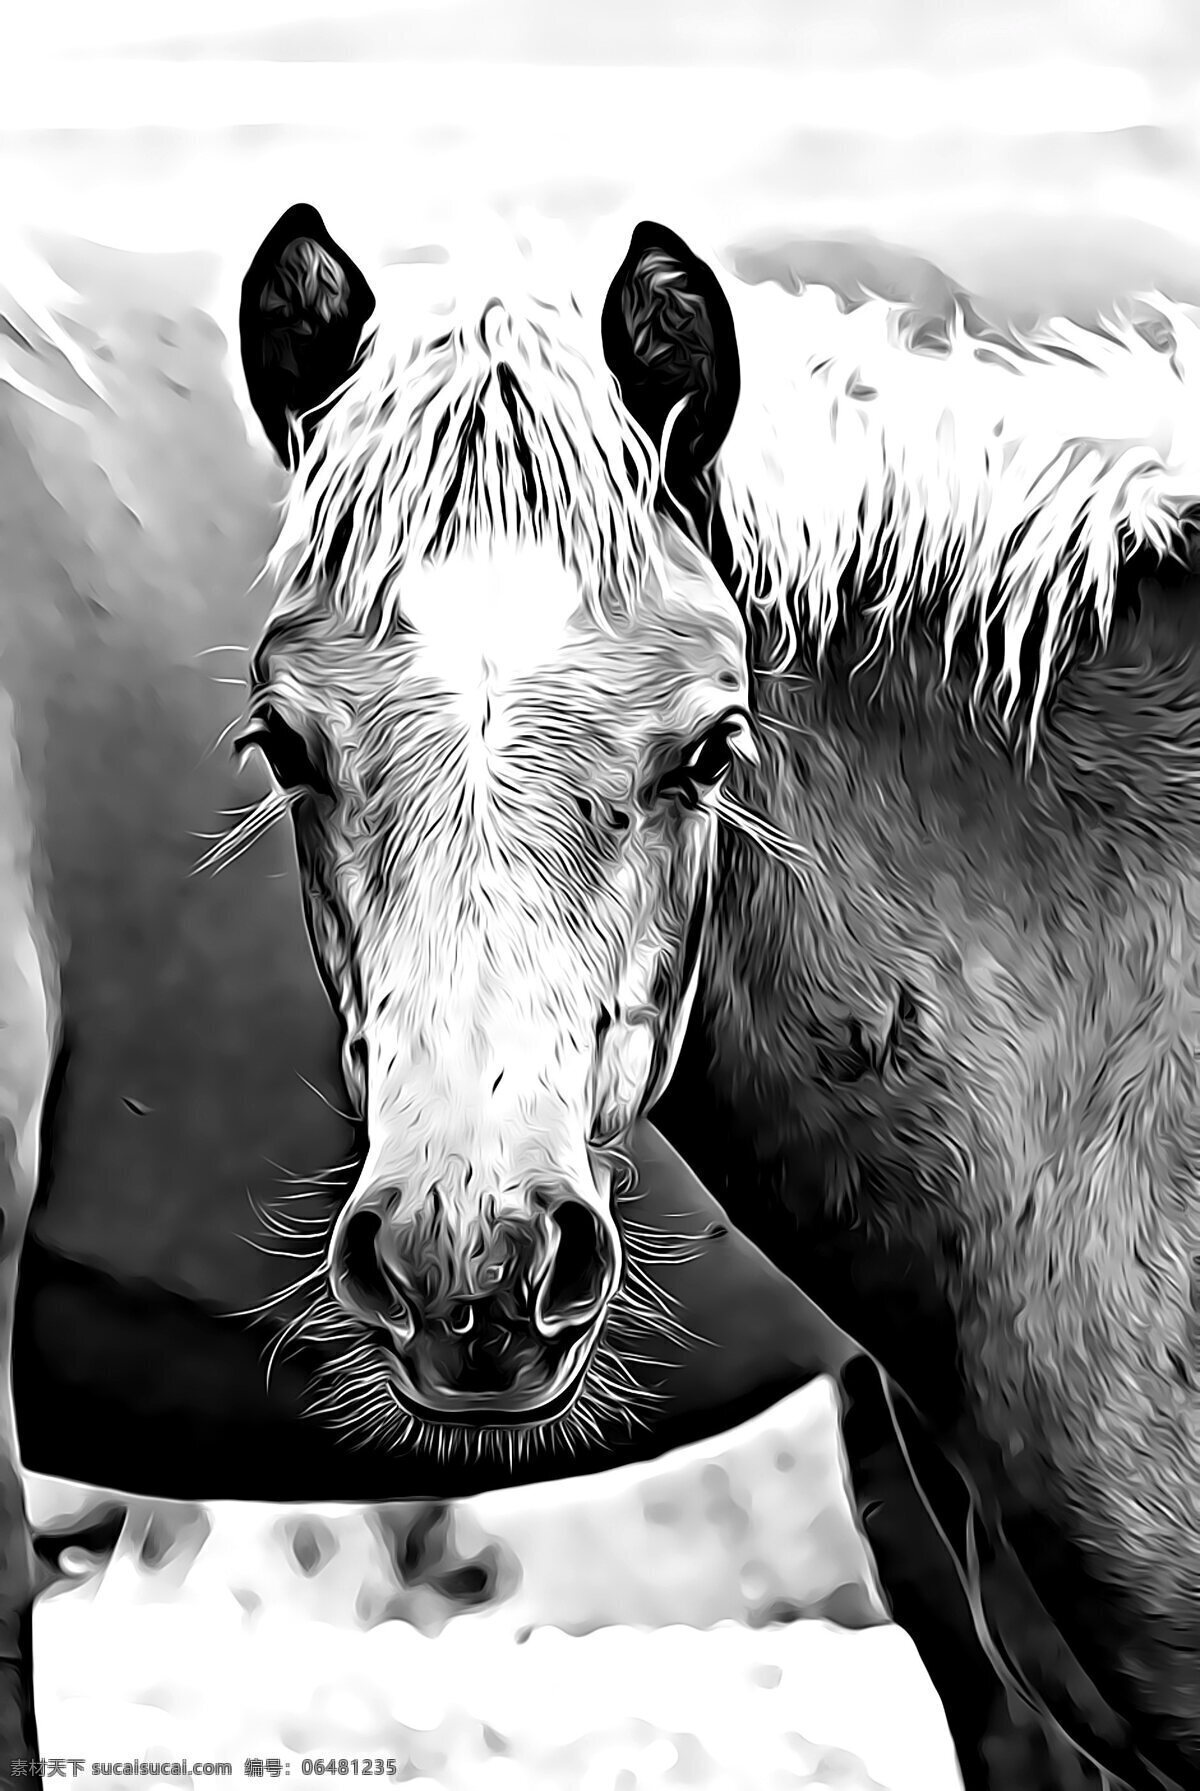 黑白 马匹 头像 局部 黑白马匹 黑白马头 马儿 骏马 马头 头部特写 头部 近景 特写 动物 生物世界 家禽家畜